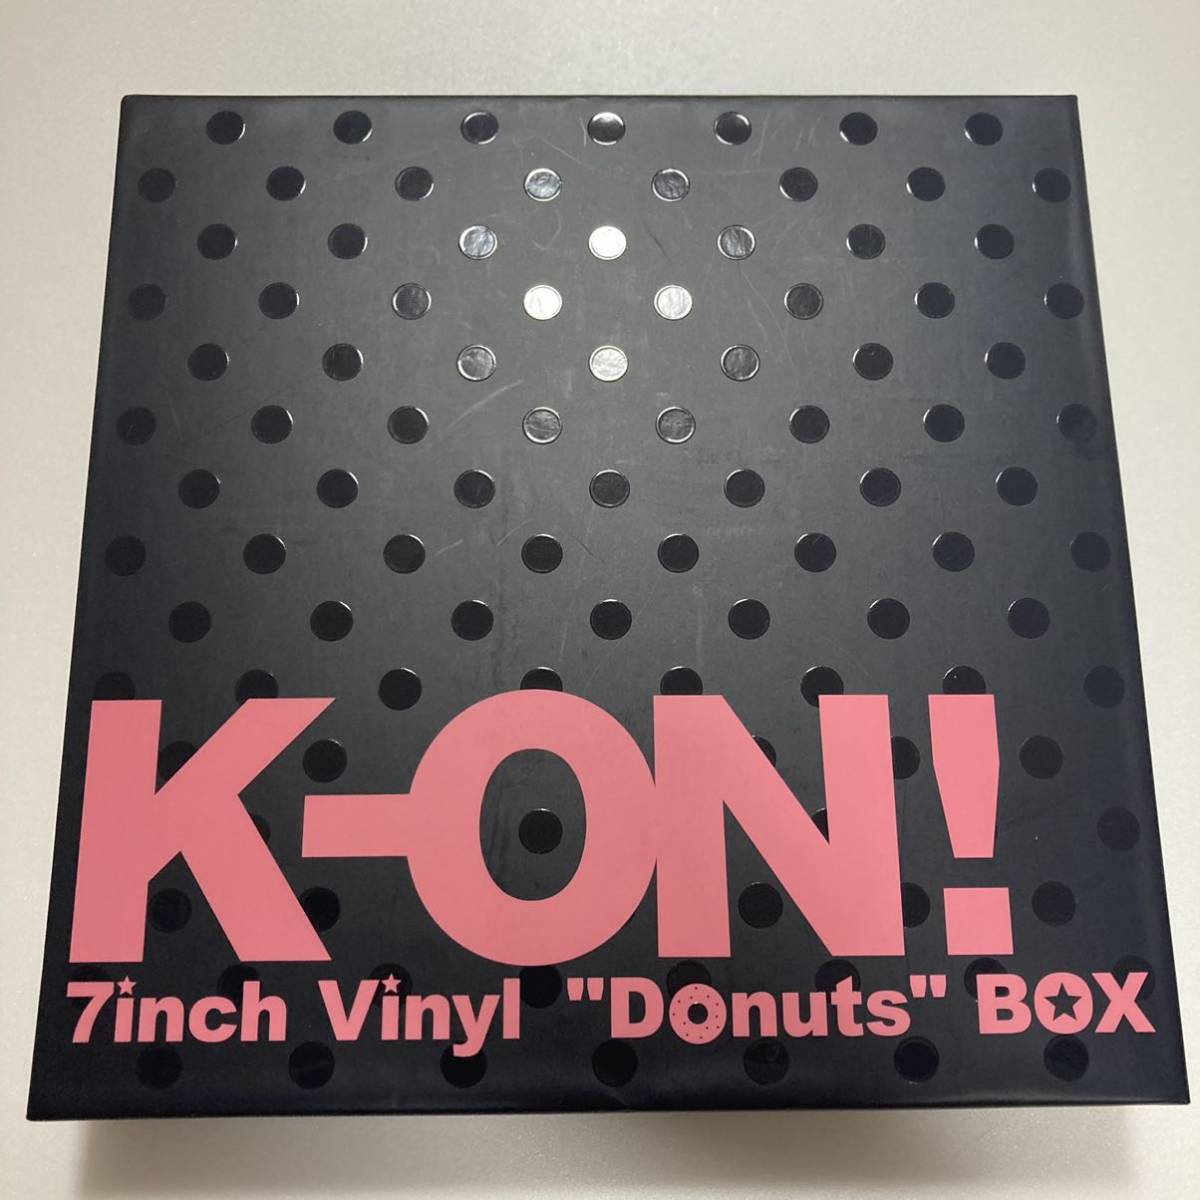 けいおん K-ON! 7inch Vinyl Donuts BOX レコード 美品 www.eco-ecurie.fr